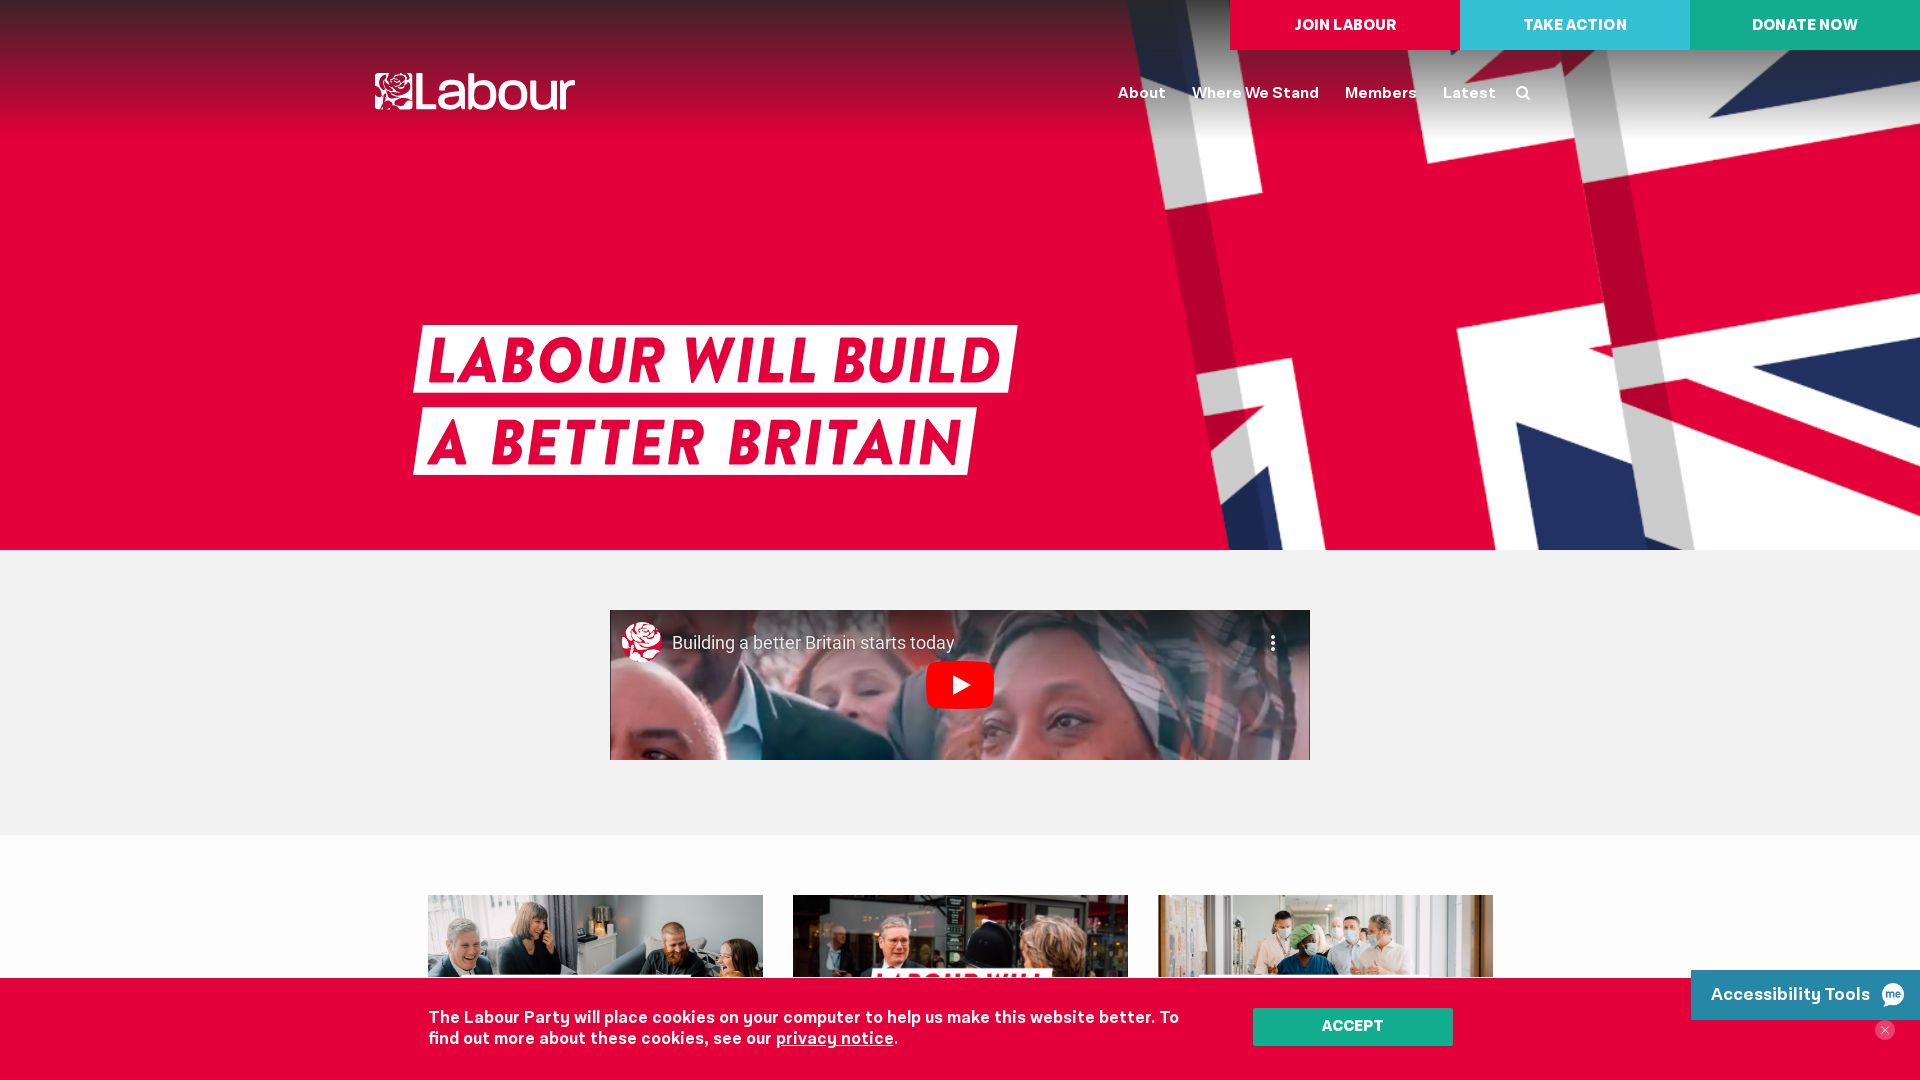 Stato del sito web labour.org.uk è   ONLINE